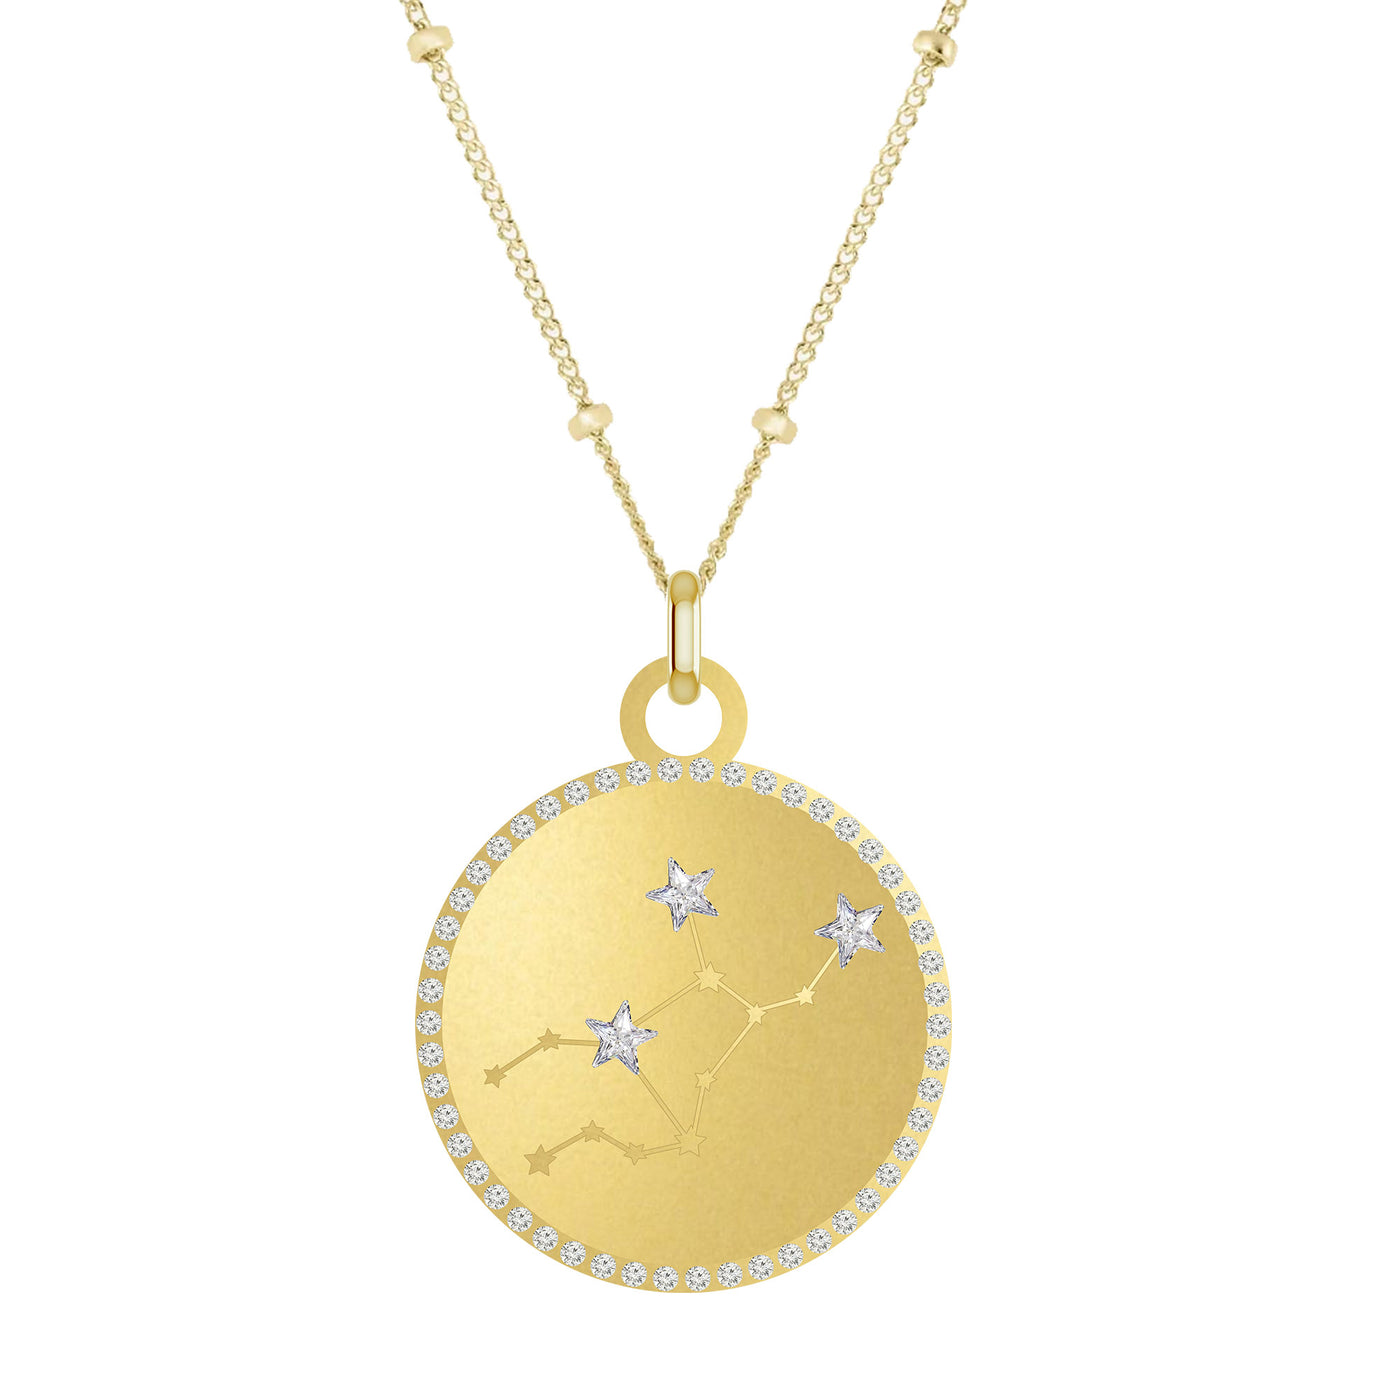 VIRGO Round Zodiac Constellation with Stars Necklace